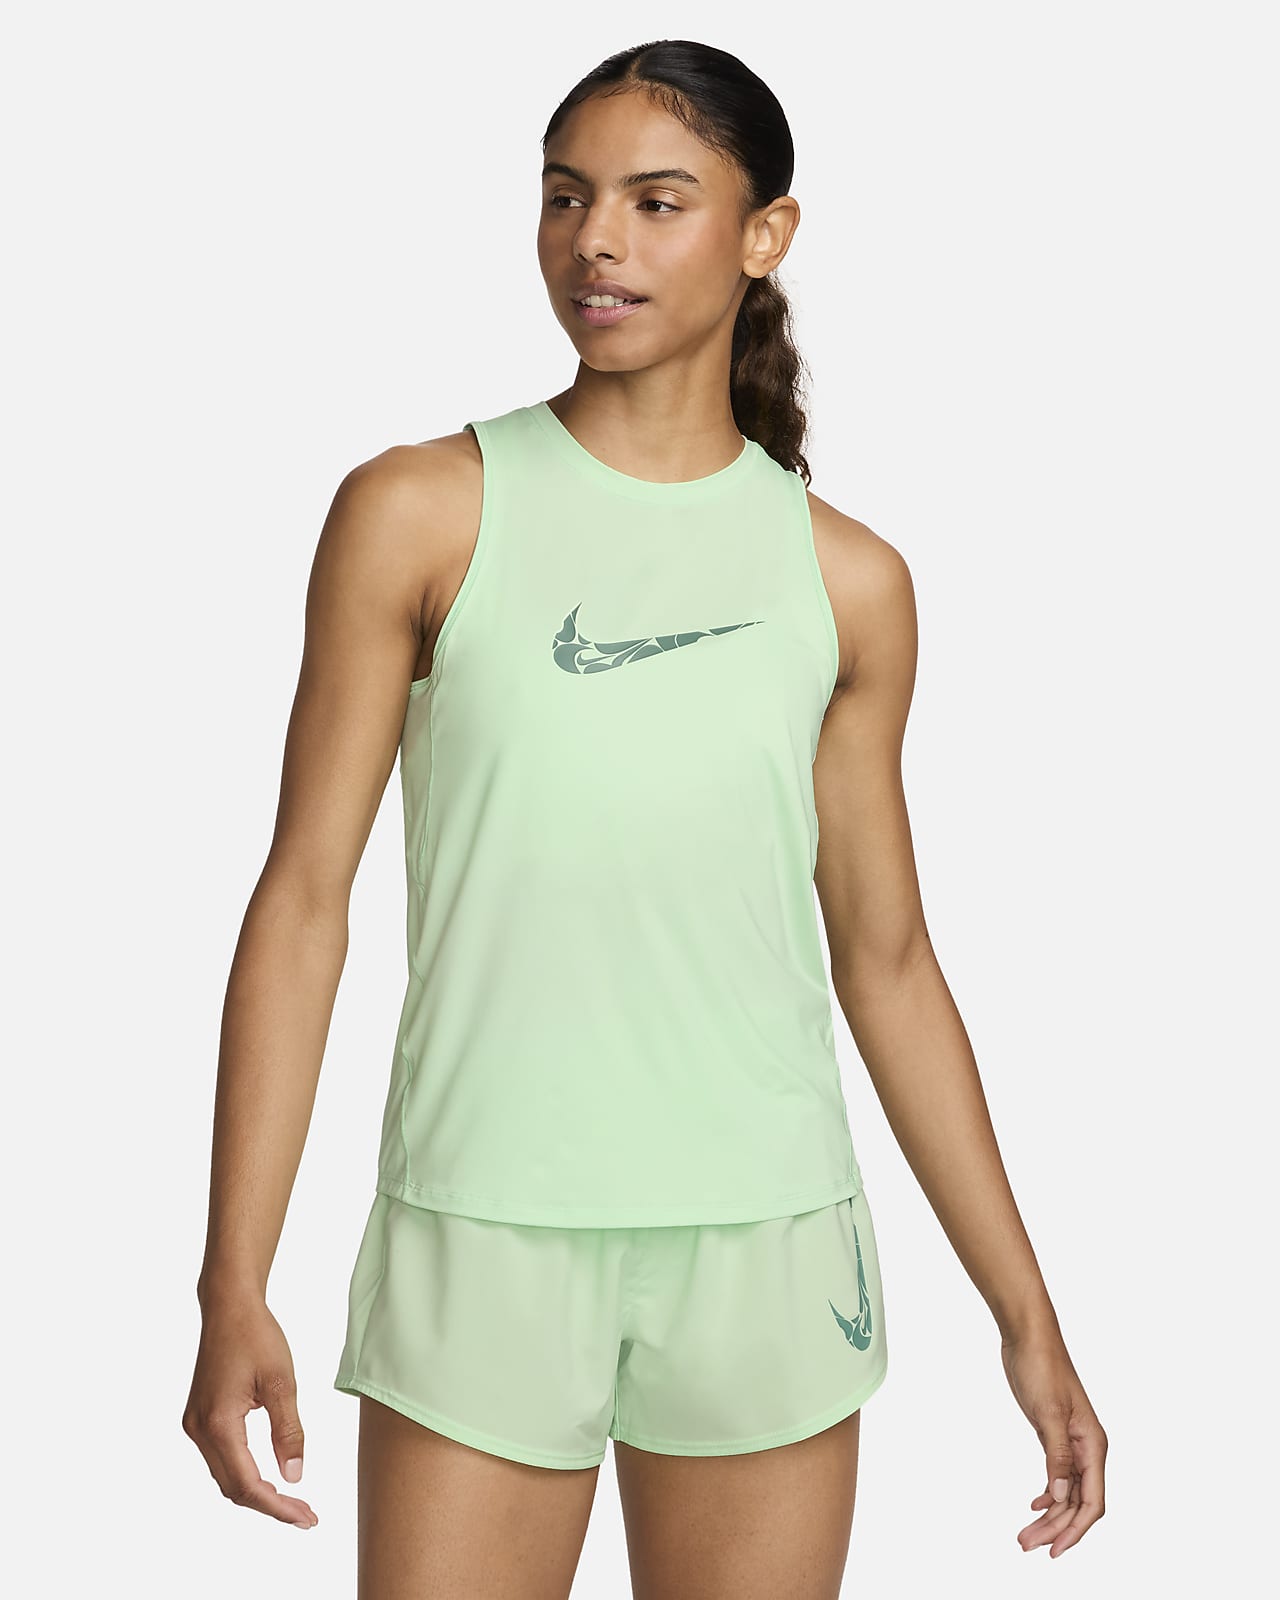 Löparlinne med tryck Nike One för kvinnor